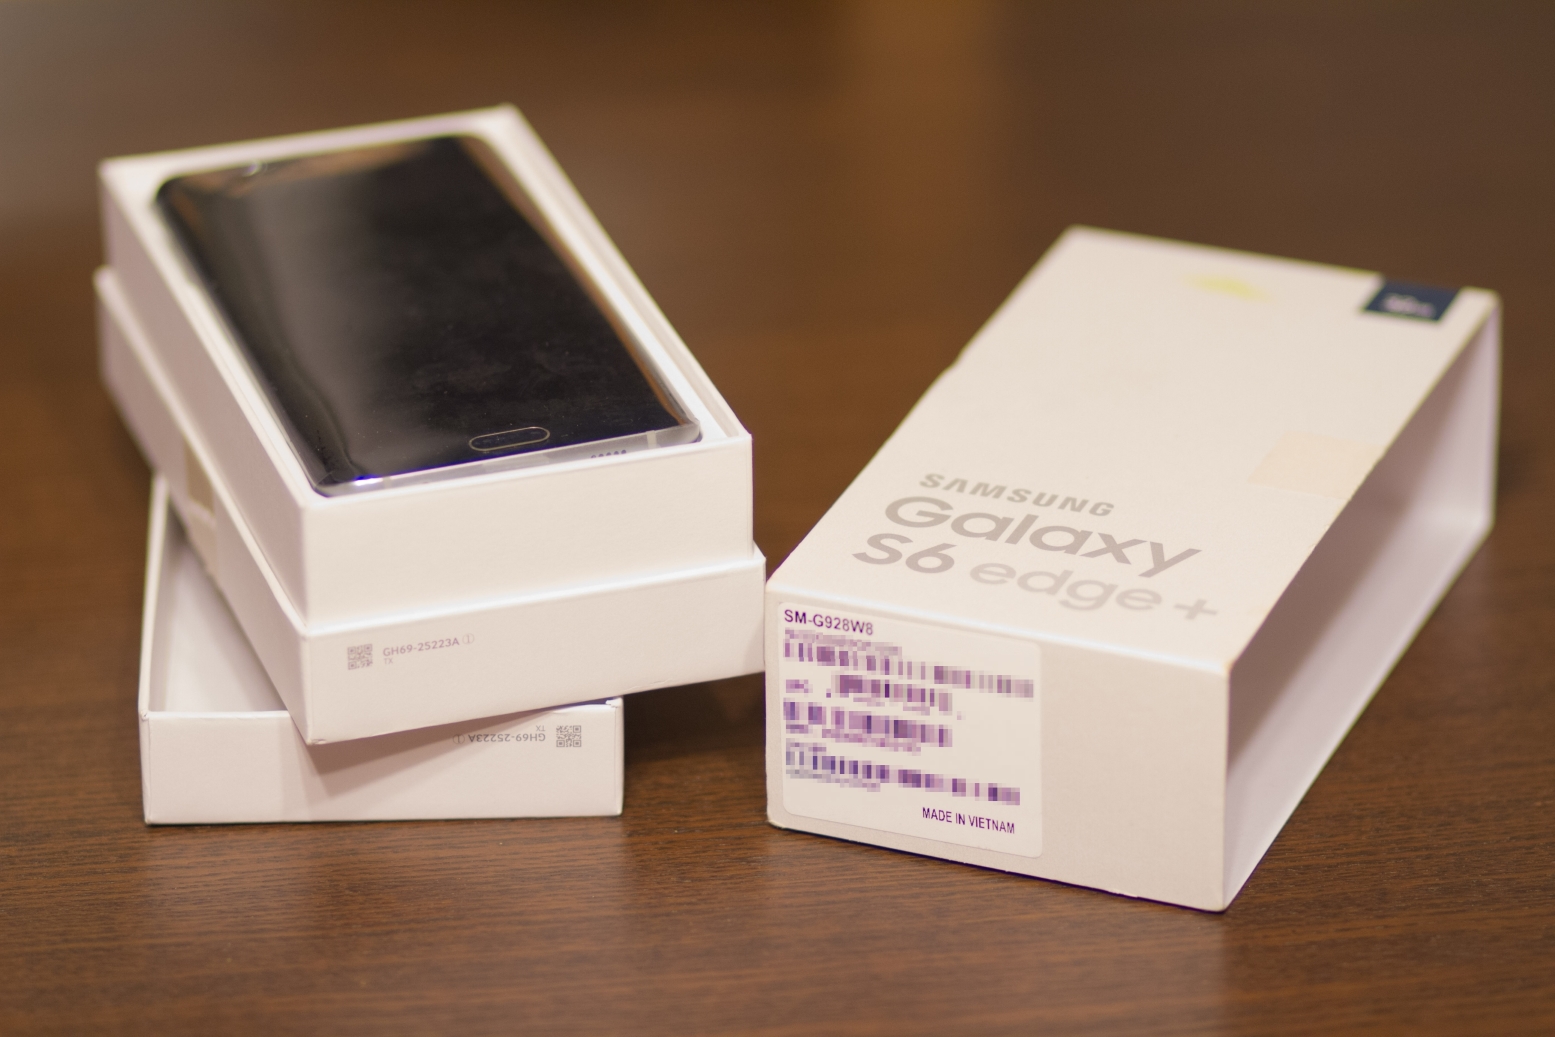 La boite du Samsung Galaxy S6 edge+